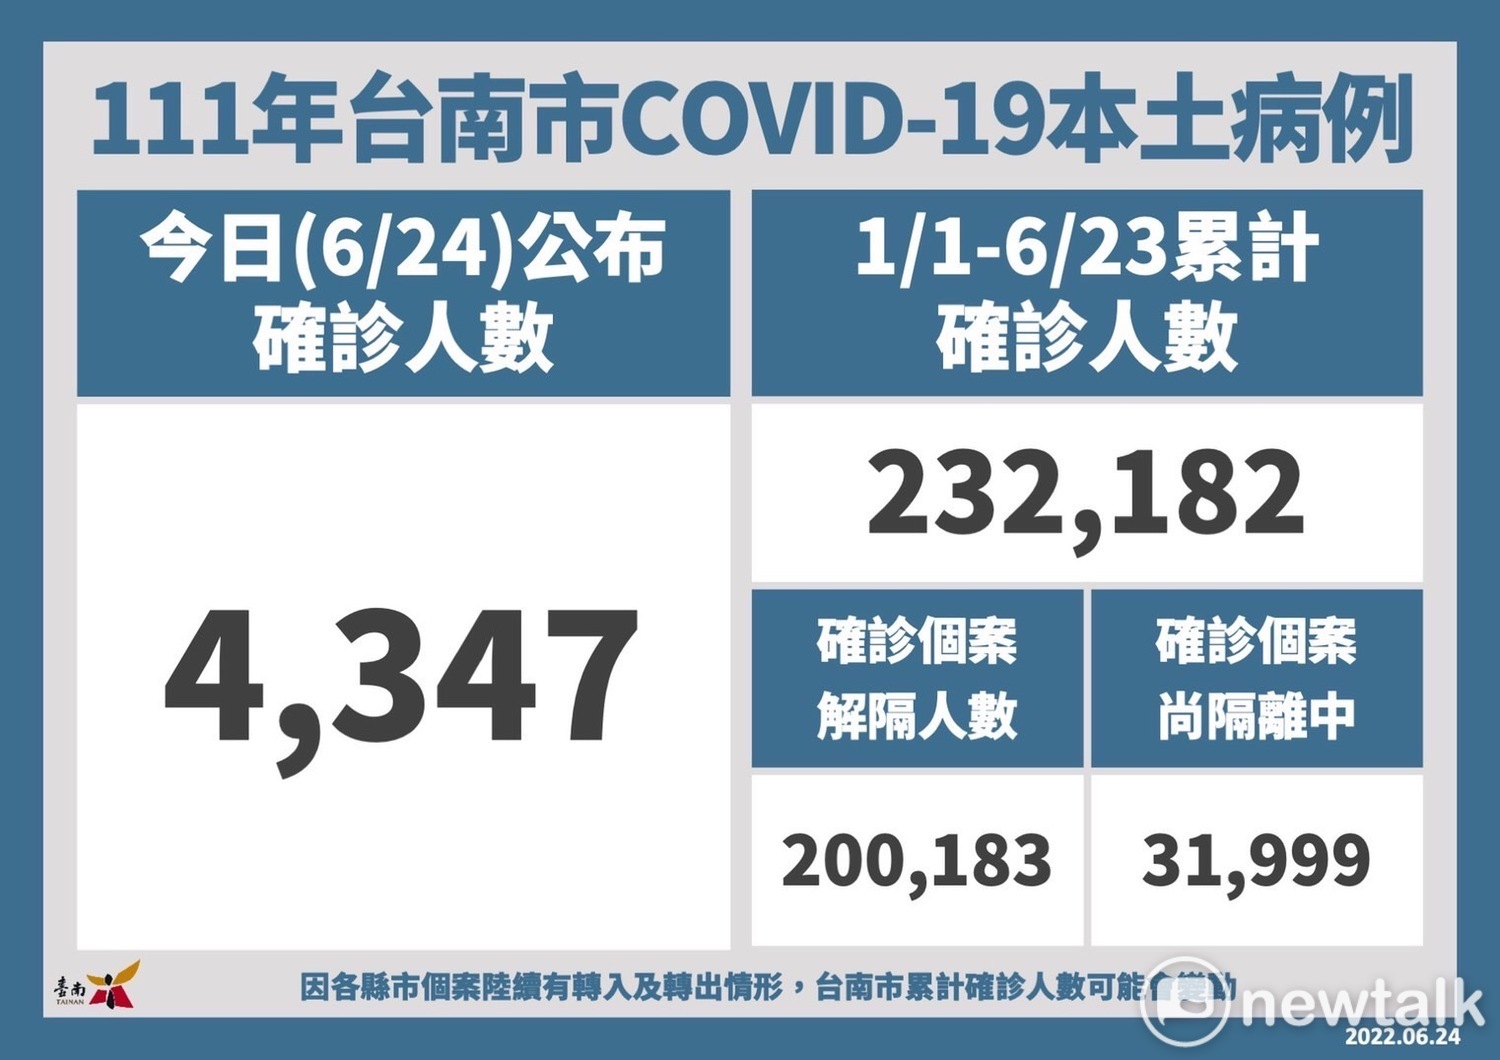 台南市今日新增4,347名COVID-19本土個案，統計自今年1月1日至6月23日，台南市累計確診個案人數共232,182名，全年齡累計確診百分比為12.53%；已解除隔離200,183名、尚在隔離中31,999名。   